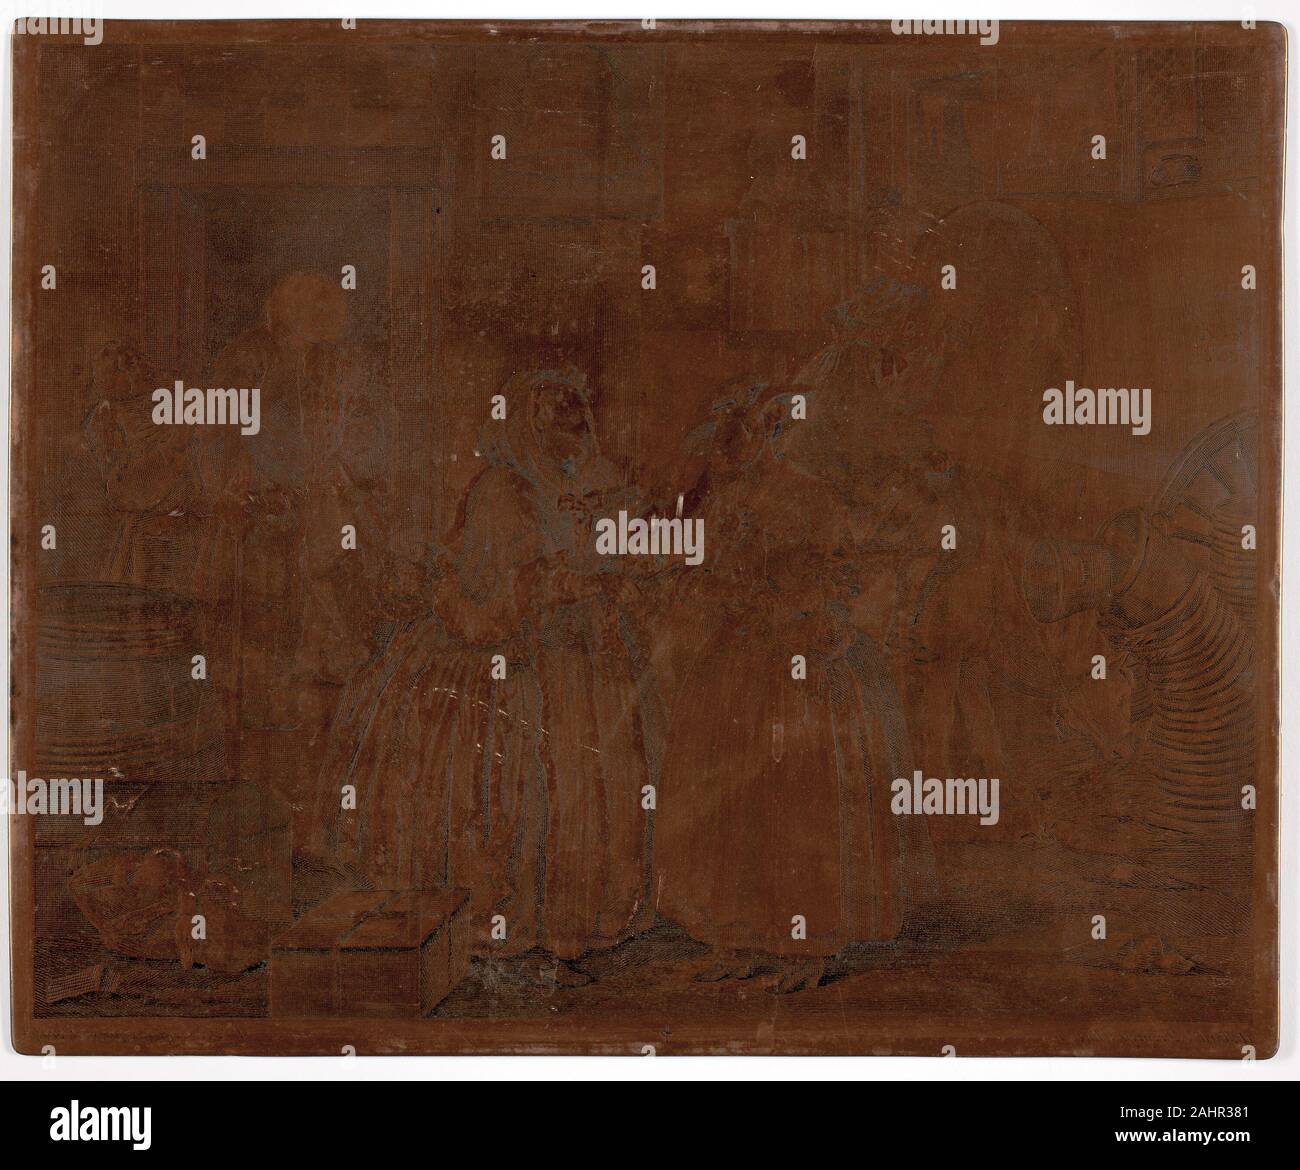 William Hogarth. Une plaque, d'une prostituée. 1732. L'Angleterre. Hogarth sur cuivre gravé ces six plaques de cuivre (1964.254-59) avec un burin, un outil métallique utilisé pour inciser l'enflure lines directement sur une surface en cuivre aplati. Il a travaillé en sens inverse de la finale de l'impression d'images, qui ont été produites par l'encrage les plaques et leur exécution par le biais d'une presse à rouleaux avec feuilles de papier sur le dessus. La petite croix en bas de chaque plaque a été ajouté lorsque Hogarth a publié le deuxième état, a publié plus de dix ans après la première édition, beaucoup copié. Les impressions sur voir à proximité sont début de s Banque D'Images